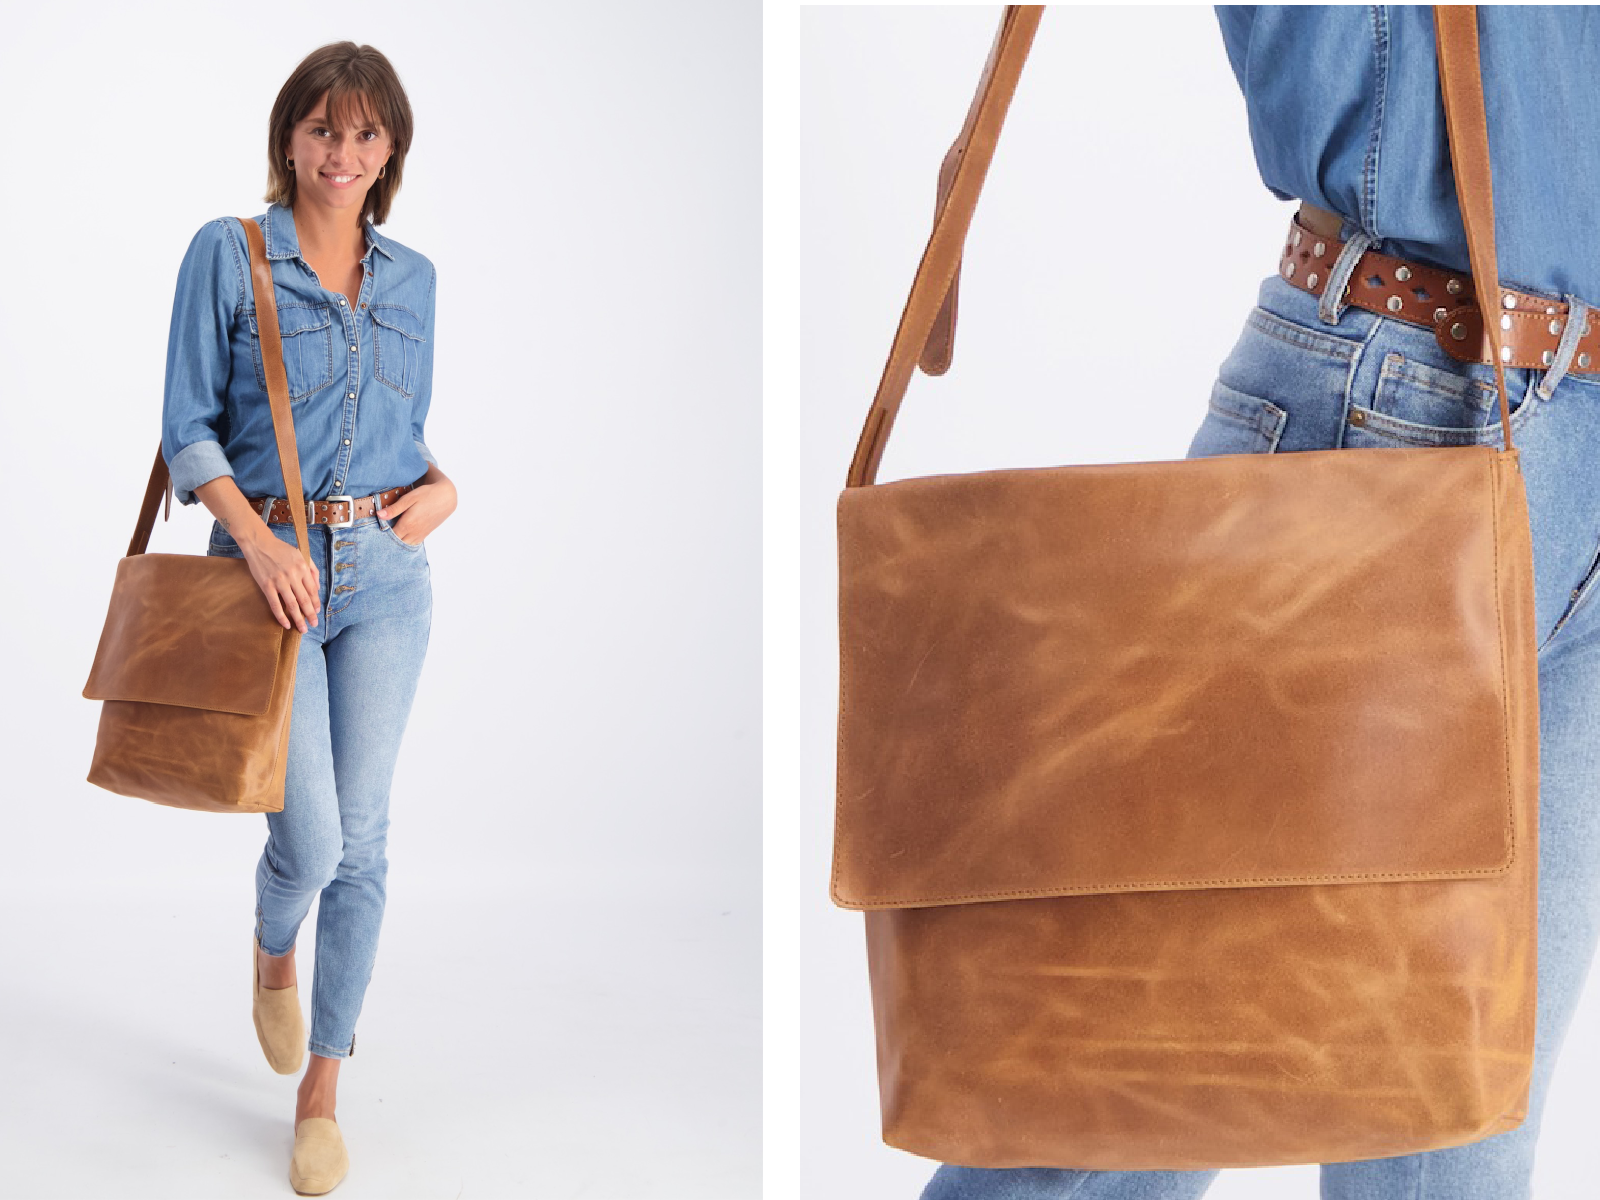 Women Laptop Tote Bag for Work Canvas Handbag Purse Shoulder Bag  Black-quilted | eBay